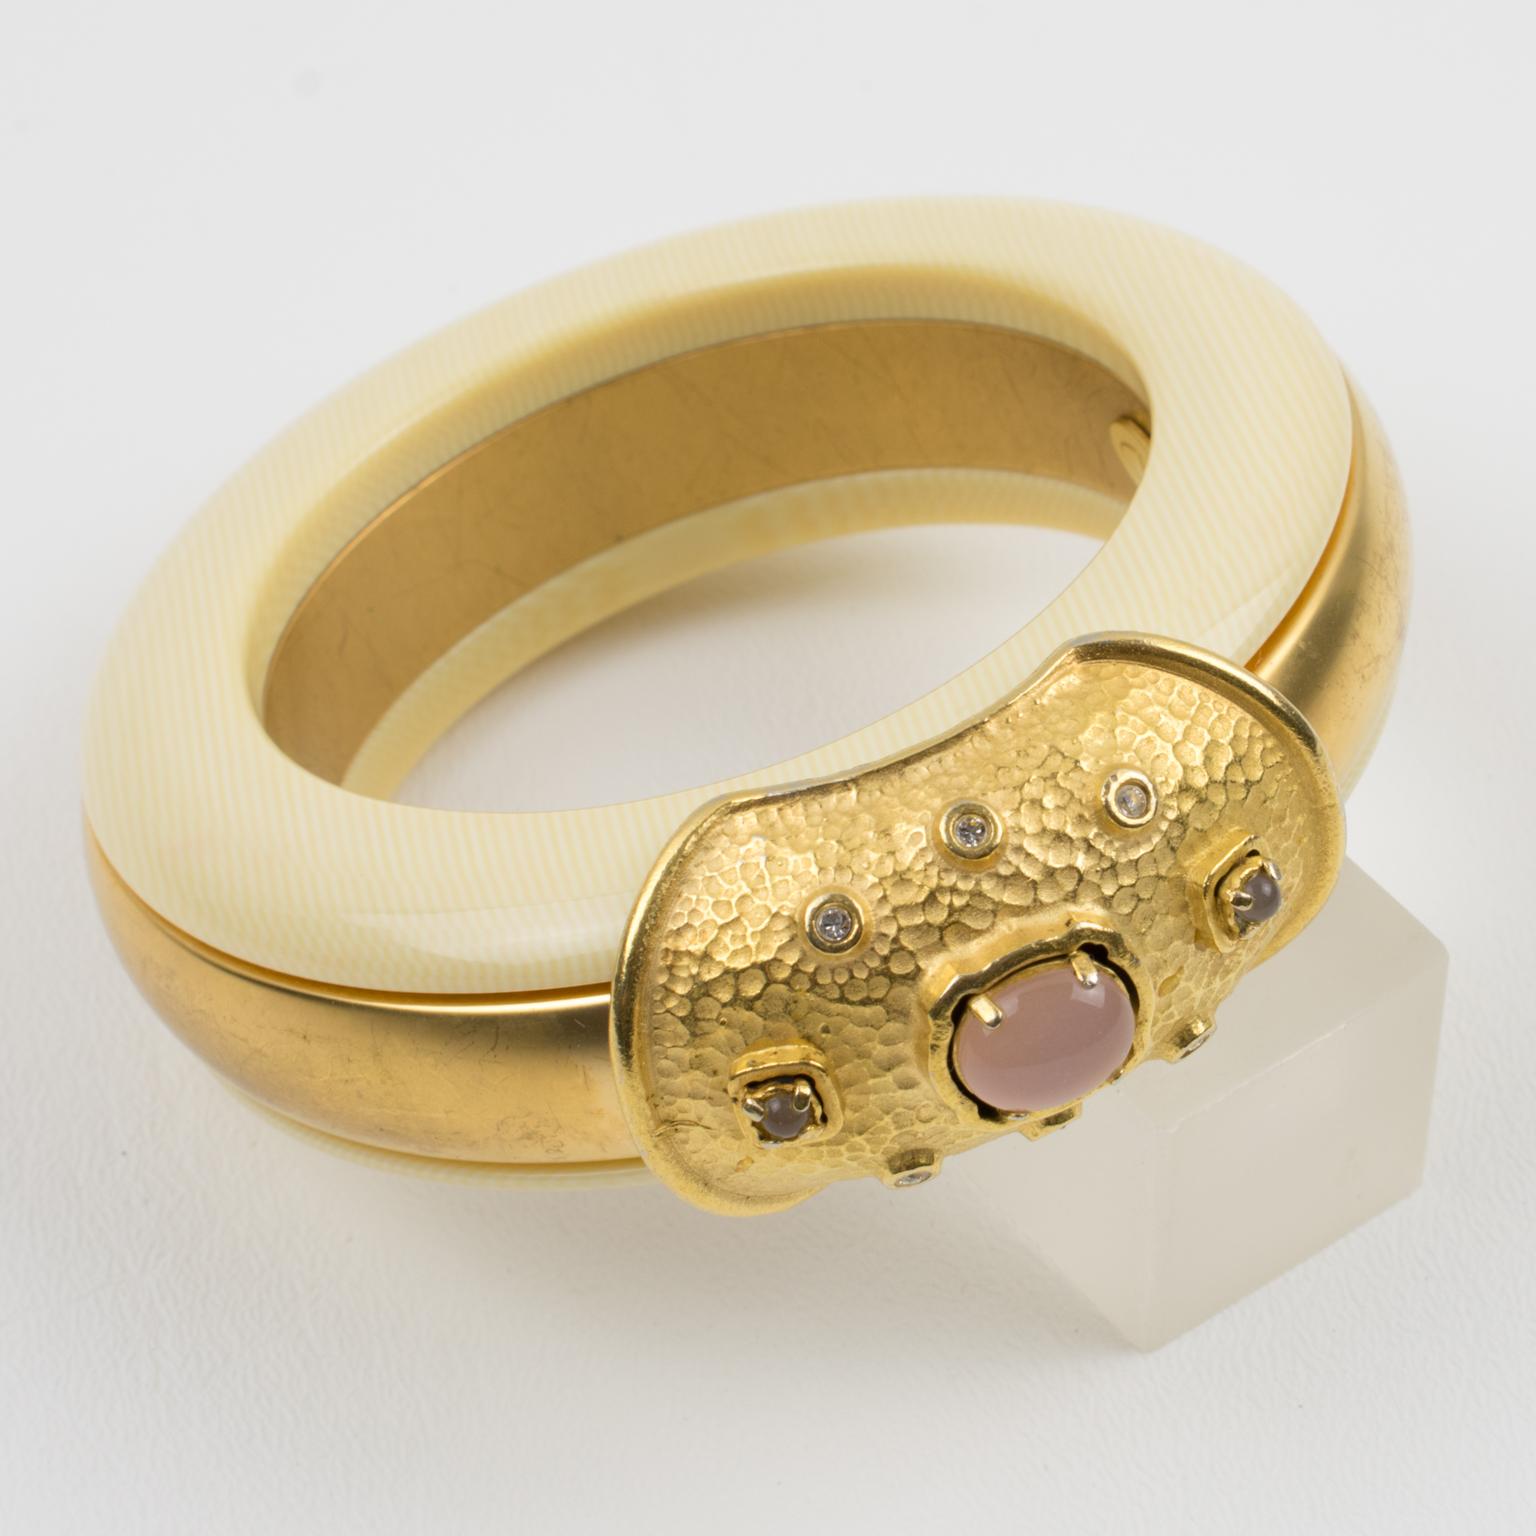 Cet étonnant bracelet bangle Valentino Garavani Haute Couture présente une forme bombée massive avec un design laminé construit avec du métal doré dans un aspect satiné contrasté avec de la résine blanc cassé avec une texture faux-ivoire. Le